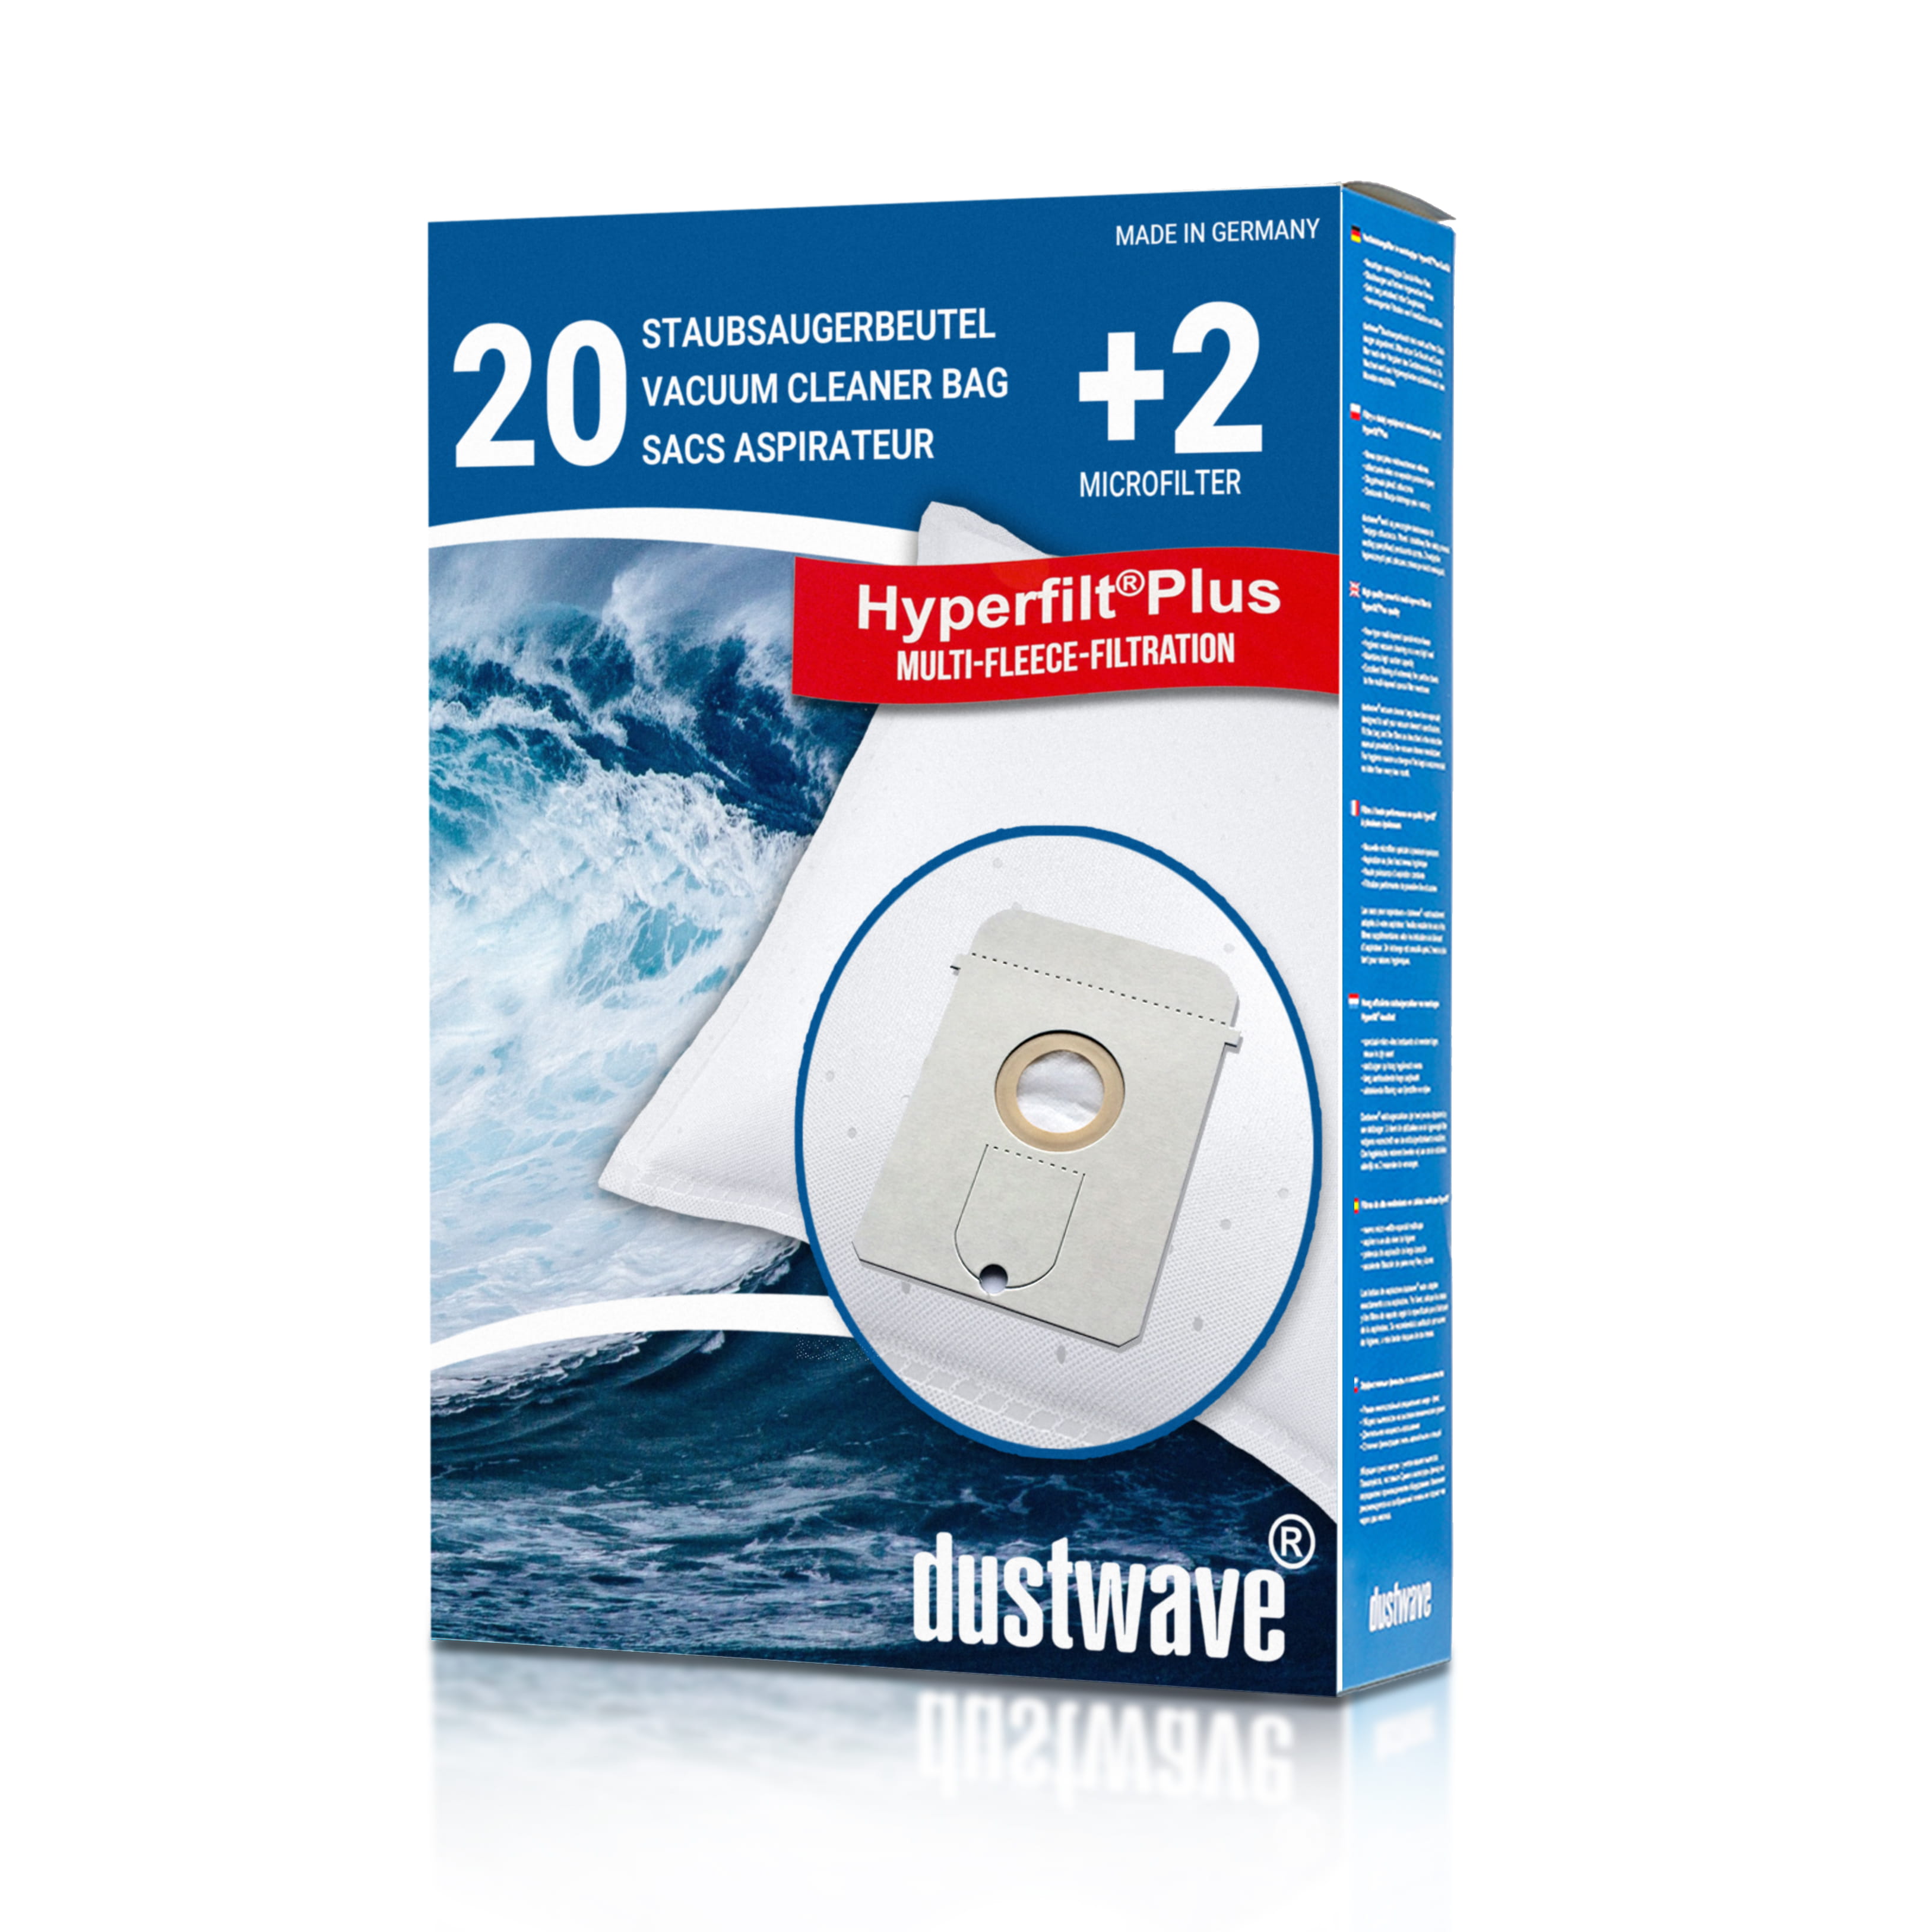 Dustwave® 20 Staubsaugerbeutel für AEG Vampyr TC 150 / 160 / 1509 / 1609 - hocheffizient, mehrlagiges Mikrovlies mit Hygieneverschluss - Made in Germany